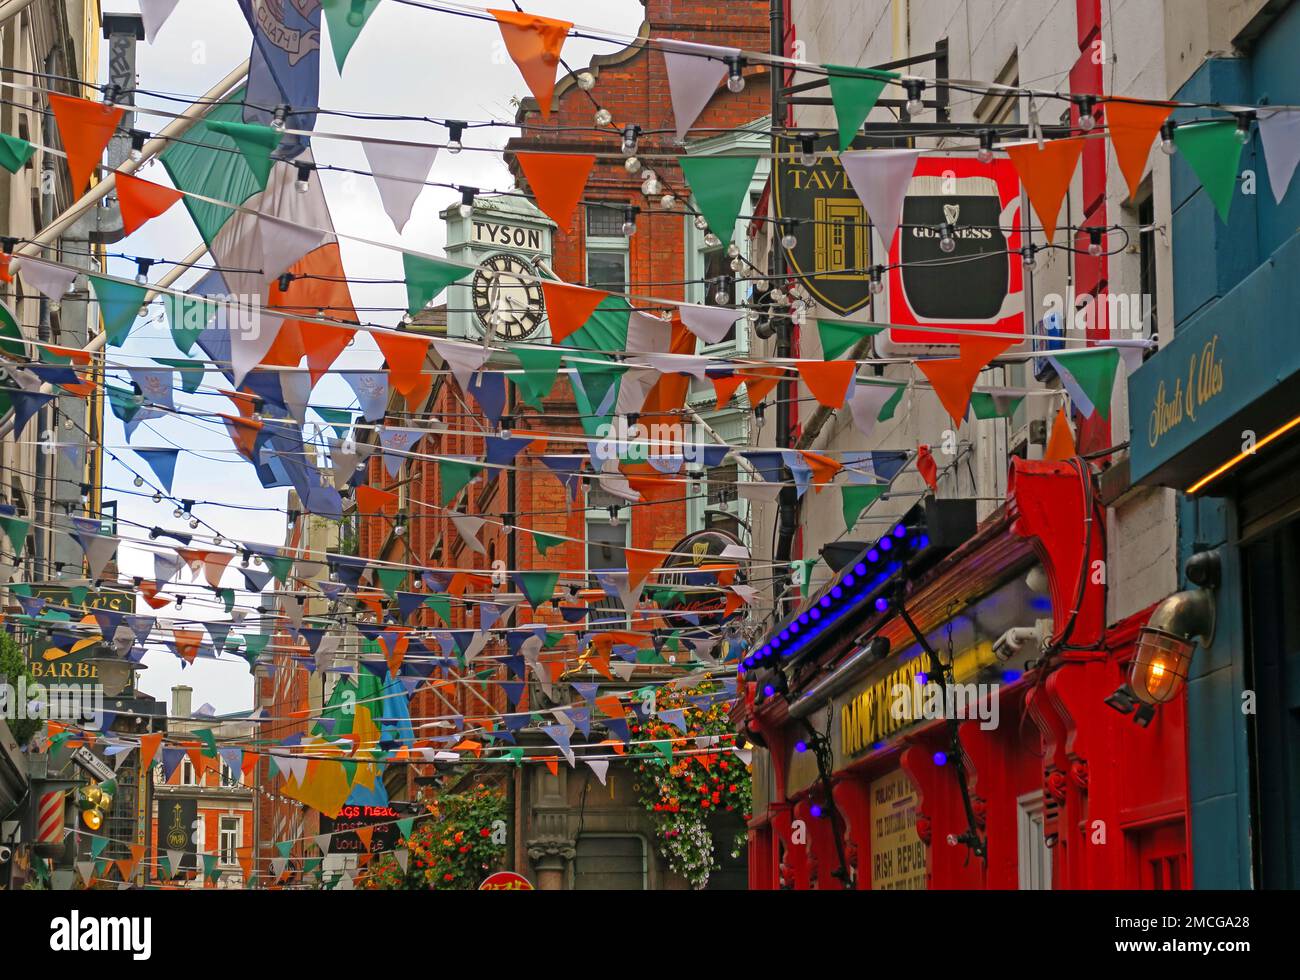 Pubs et drapeaux, Bunkting in Temple Bar, Dame CT, Tyson Clock, bars, St Patricks Day Celebrations, Dublin, Eire, Irlande Banque D'Images